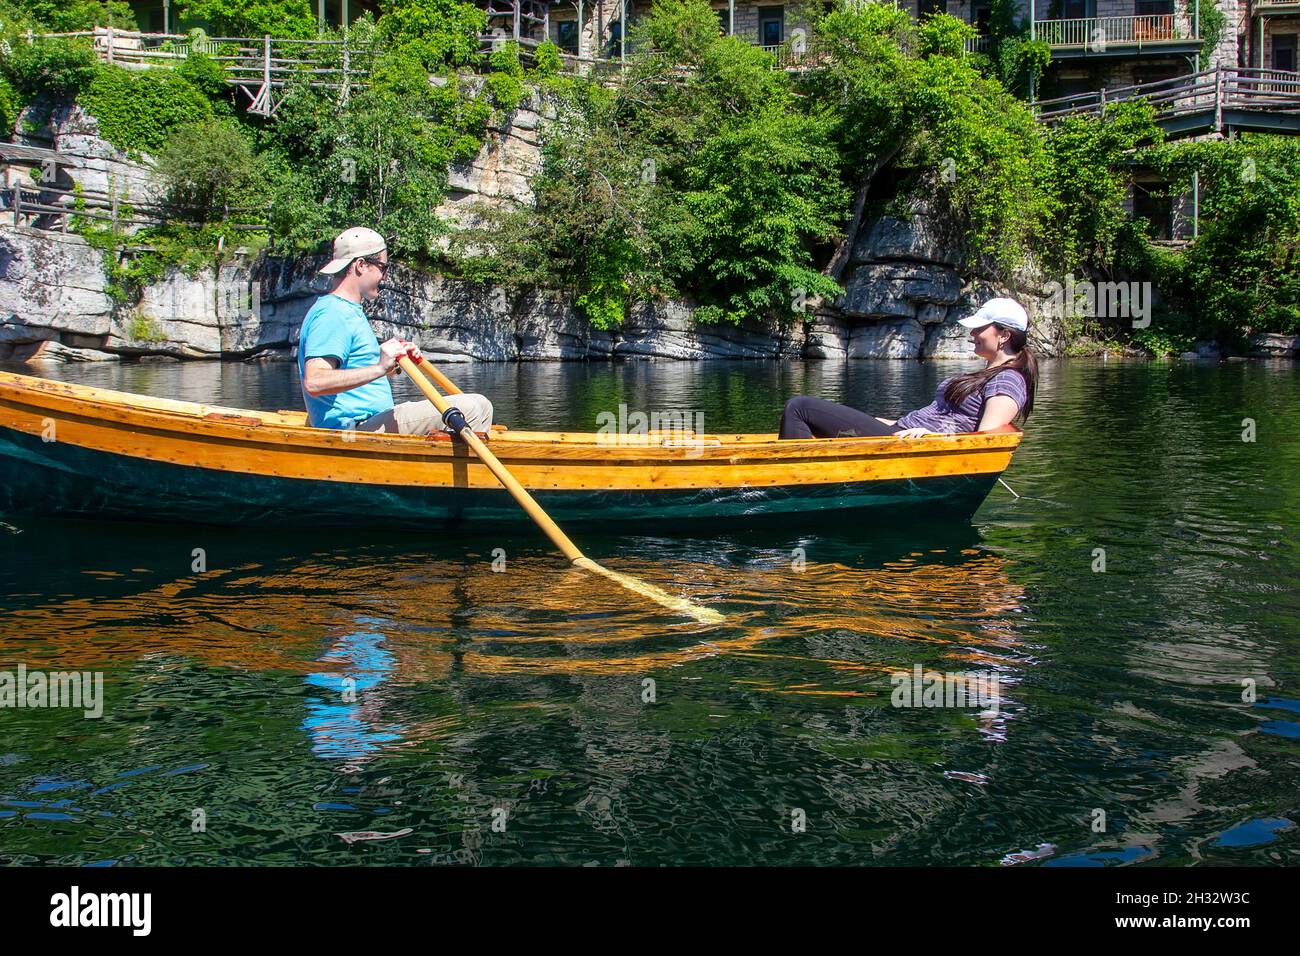 New Paltz, New York - 22 giugno 2014: Una giovane coppia naviga in una barca a remi nel lago Mohonk, un hotel in stile vittoriano situato nelle Shawangunk Mountains Foto Stock